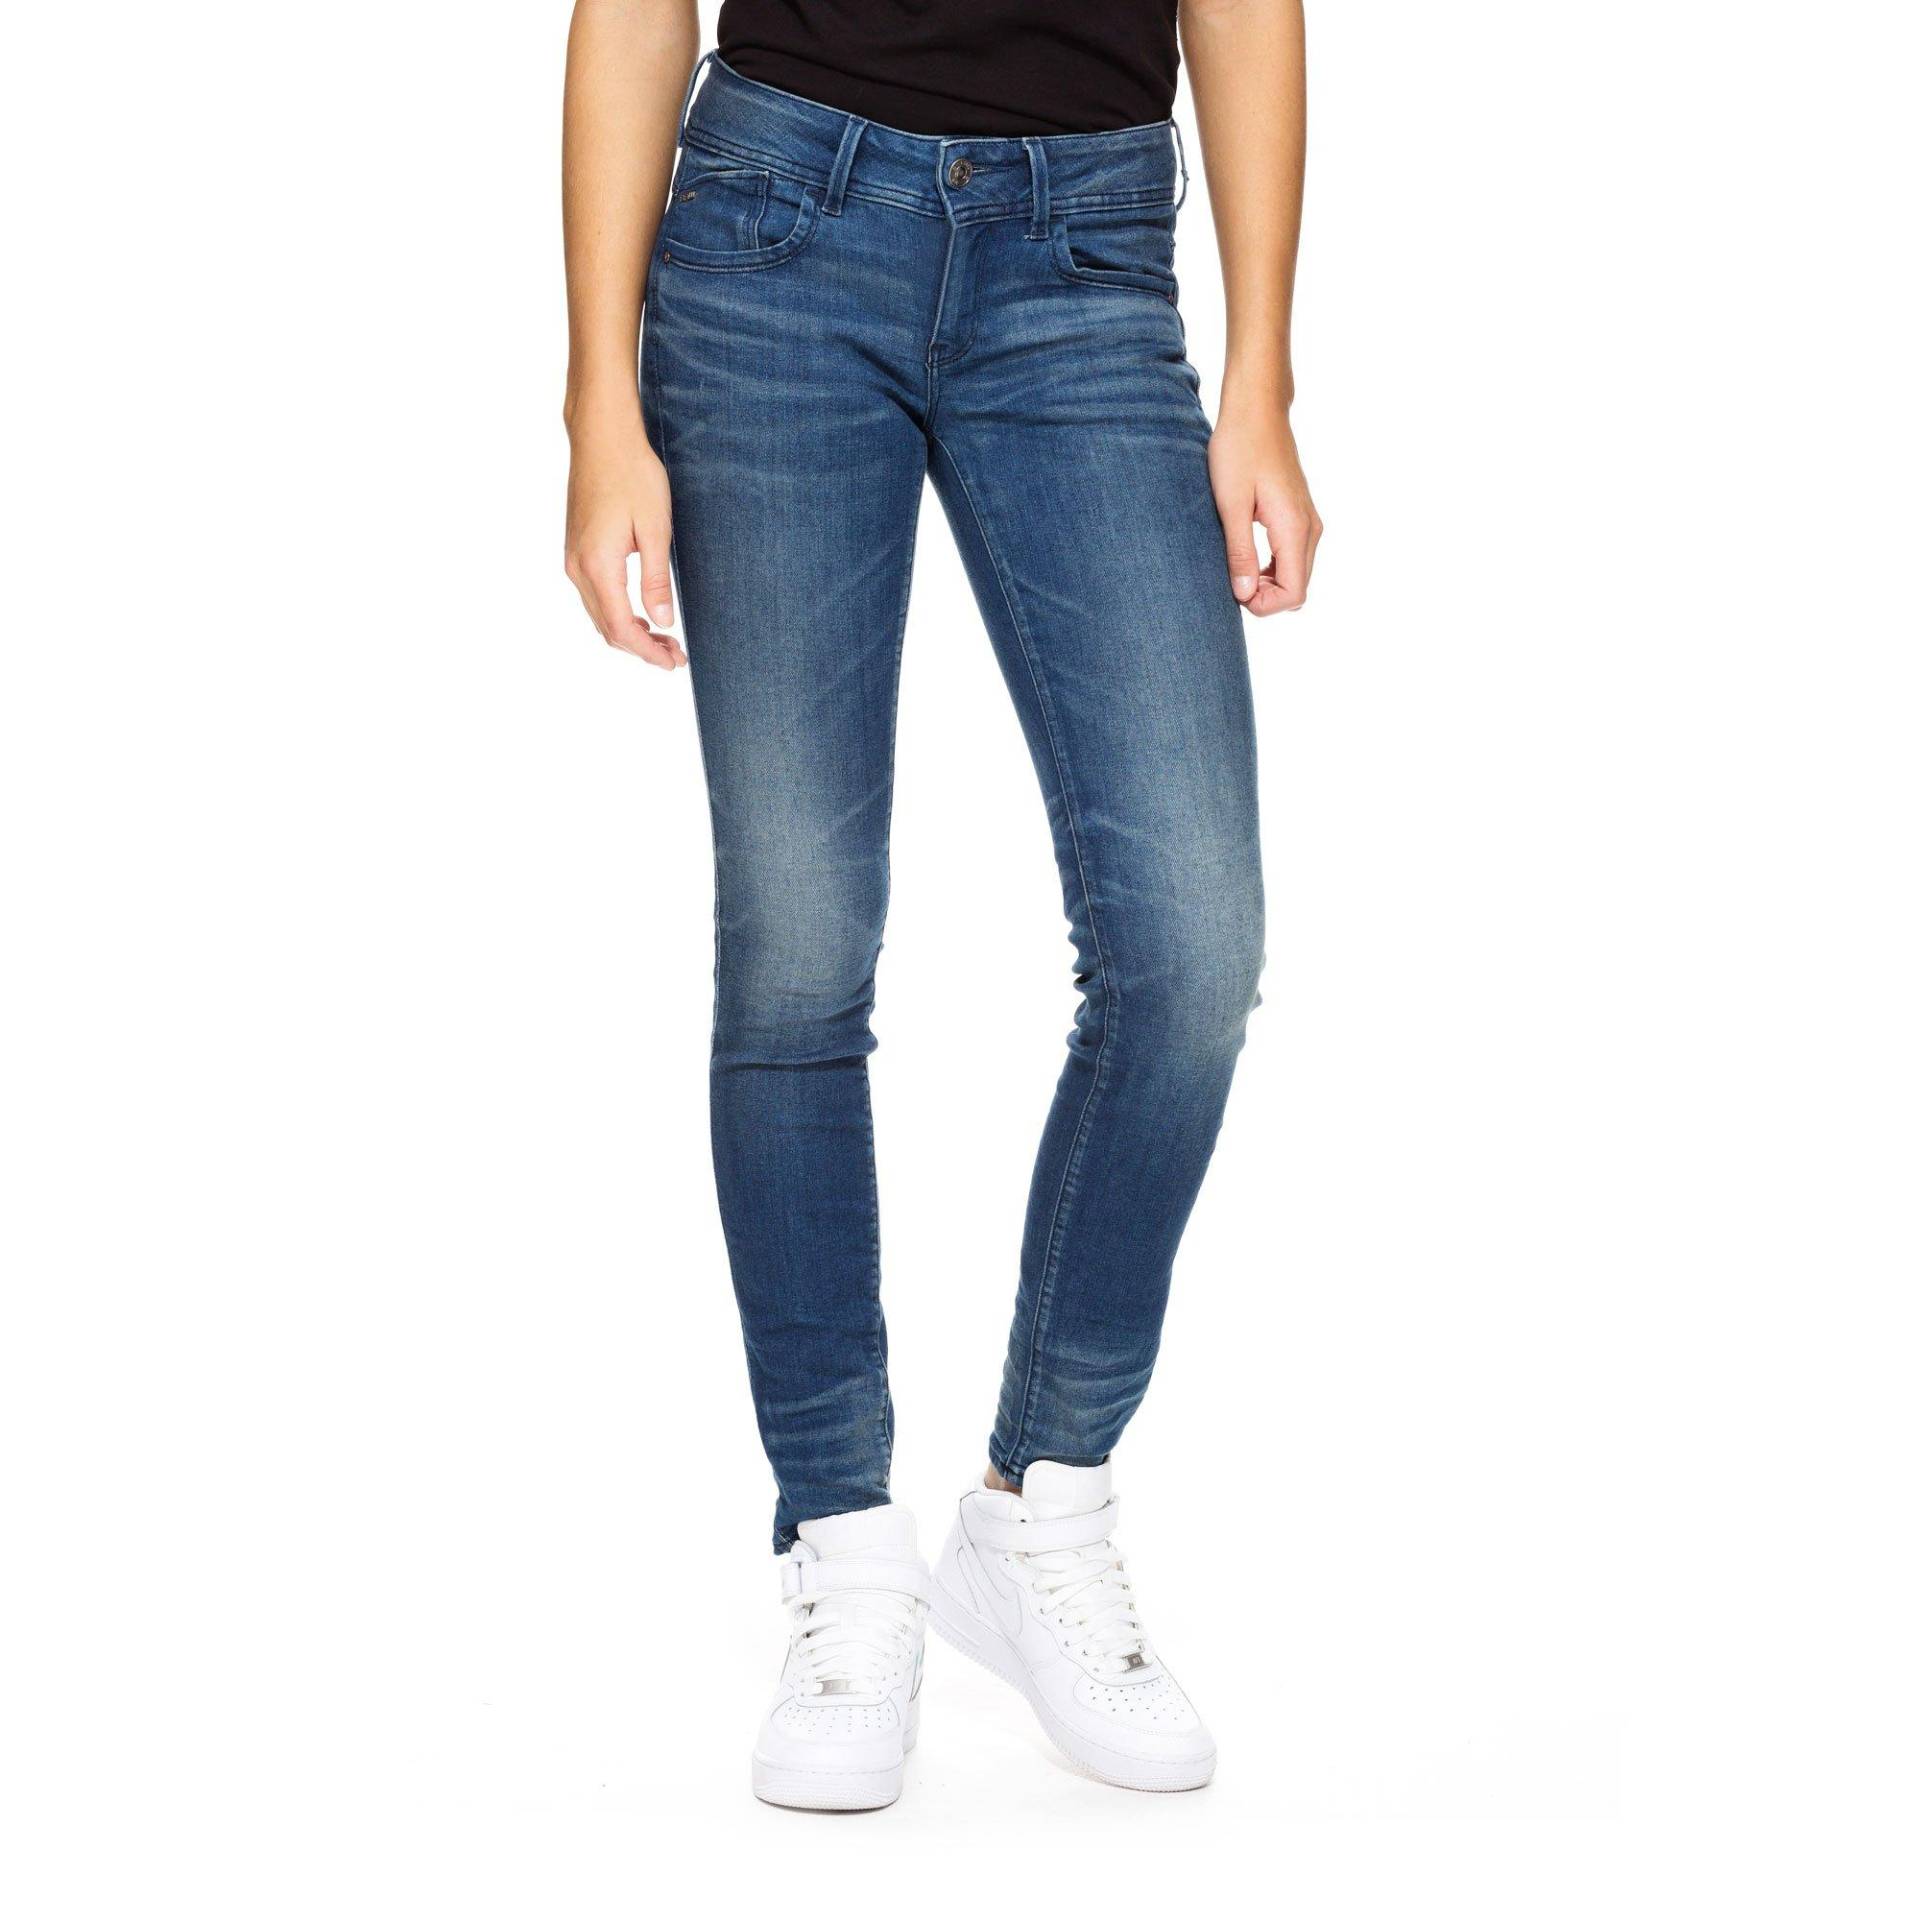 Jeans, Skinny Fit Damen Blau Denim L32/W32 von G-STAR